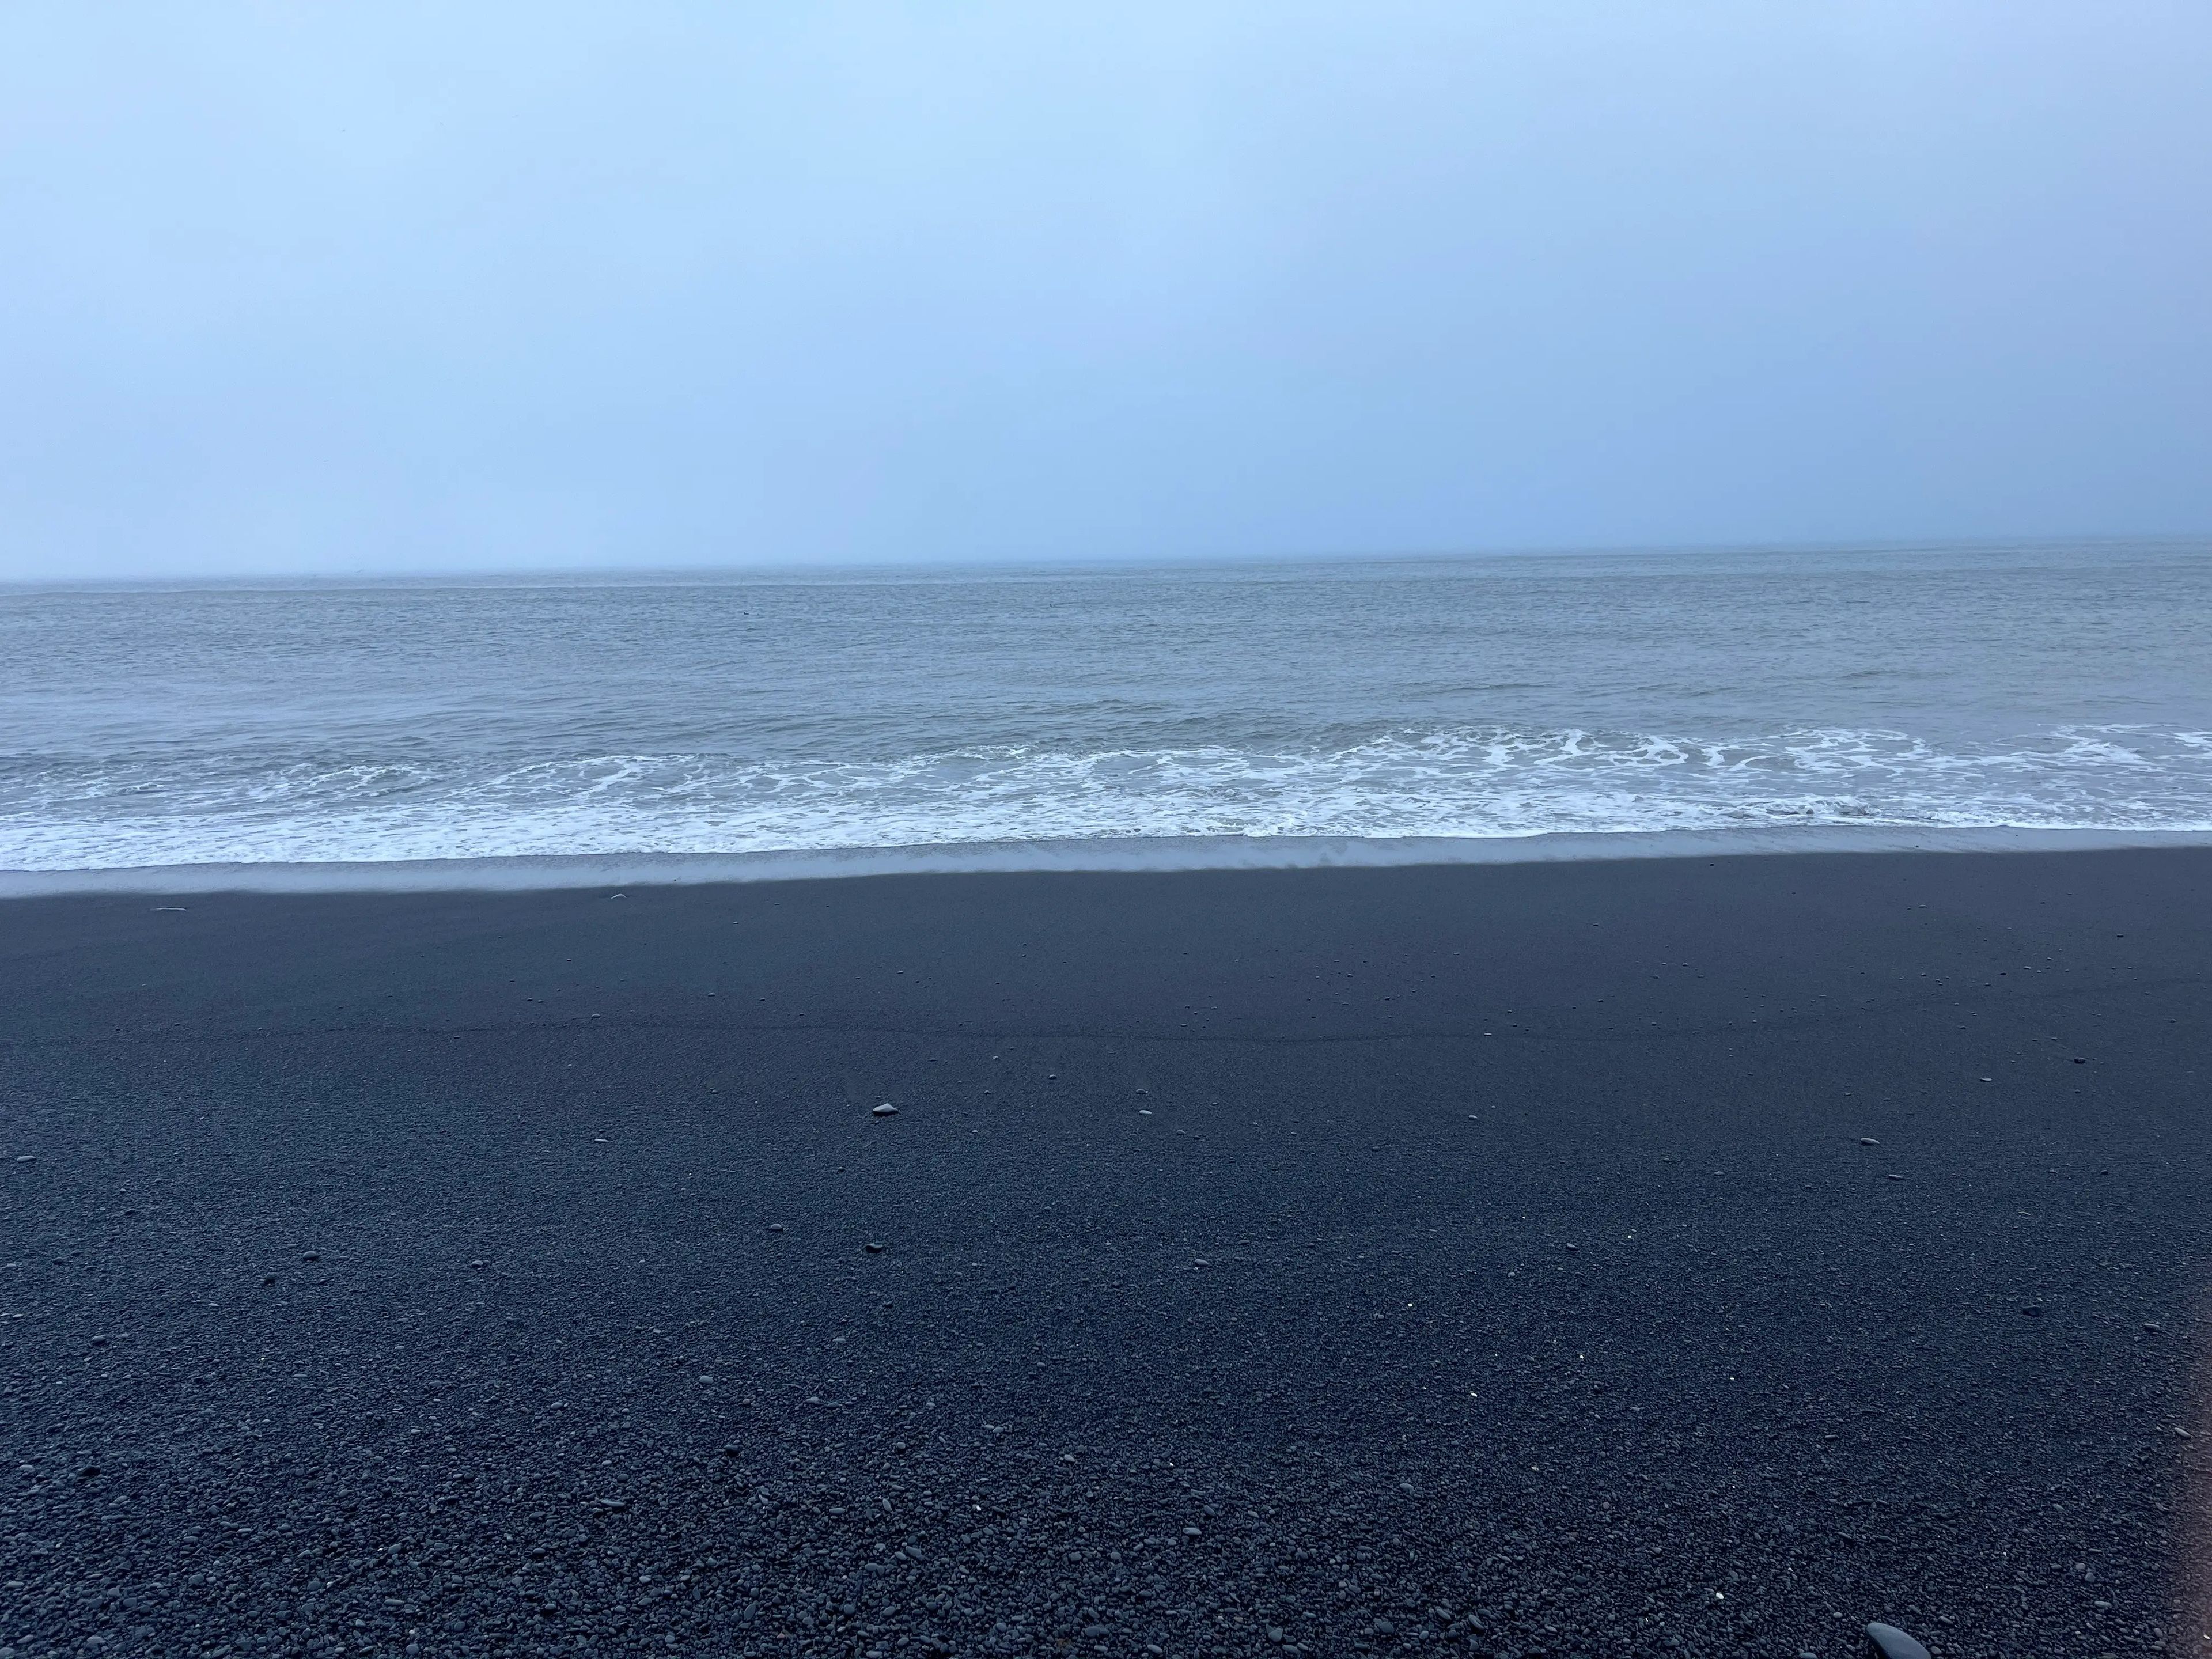 Víkurfjara, una playa de arena negra en Islandia